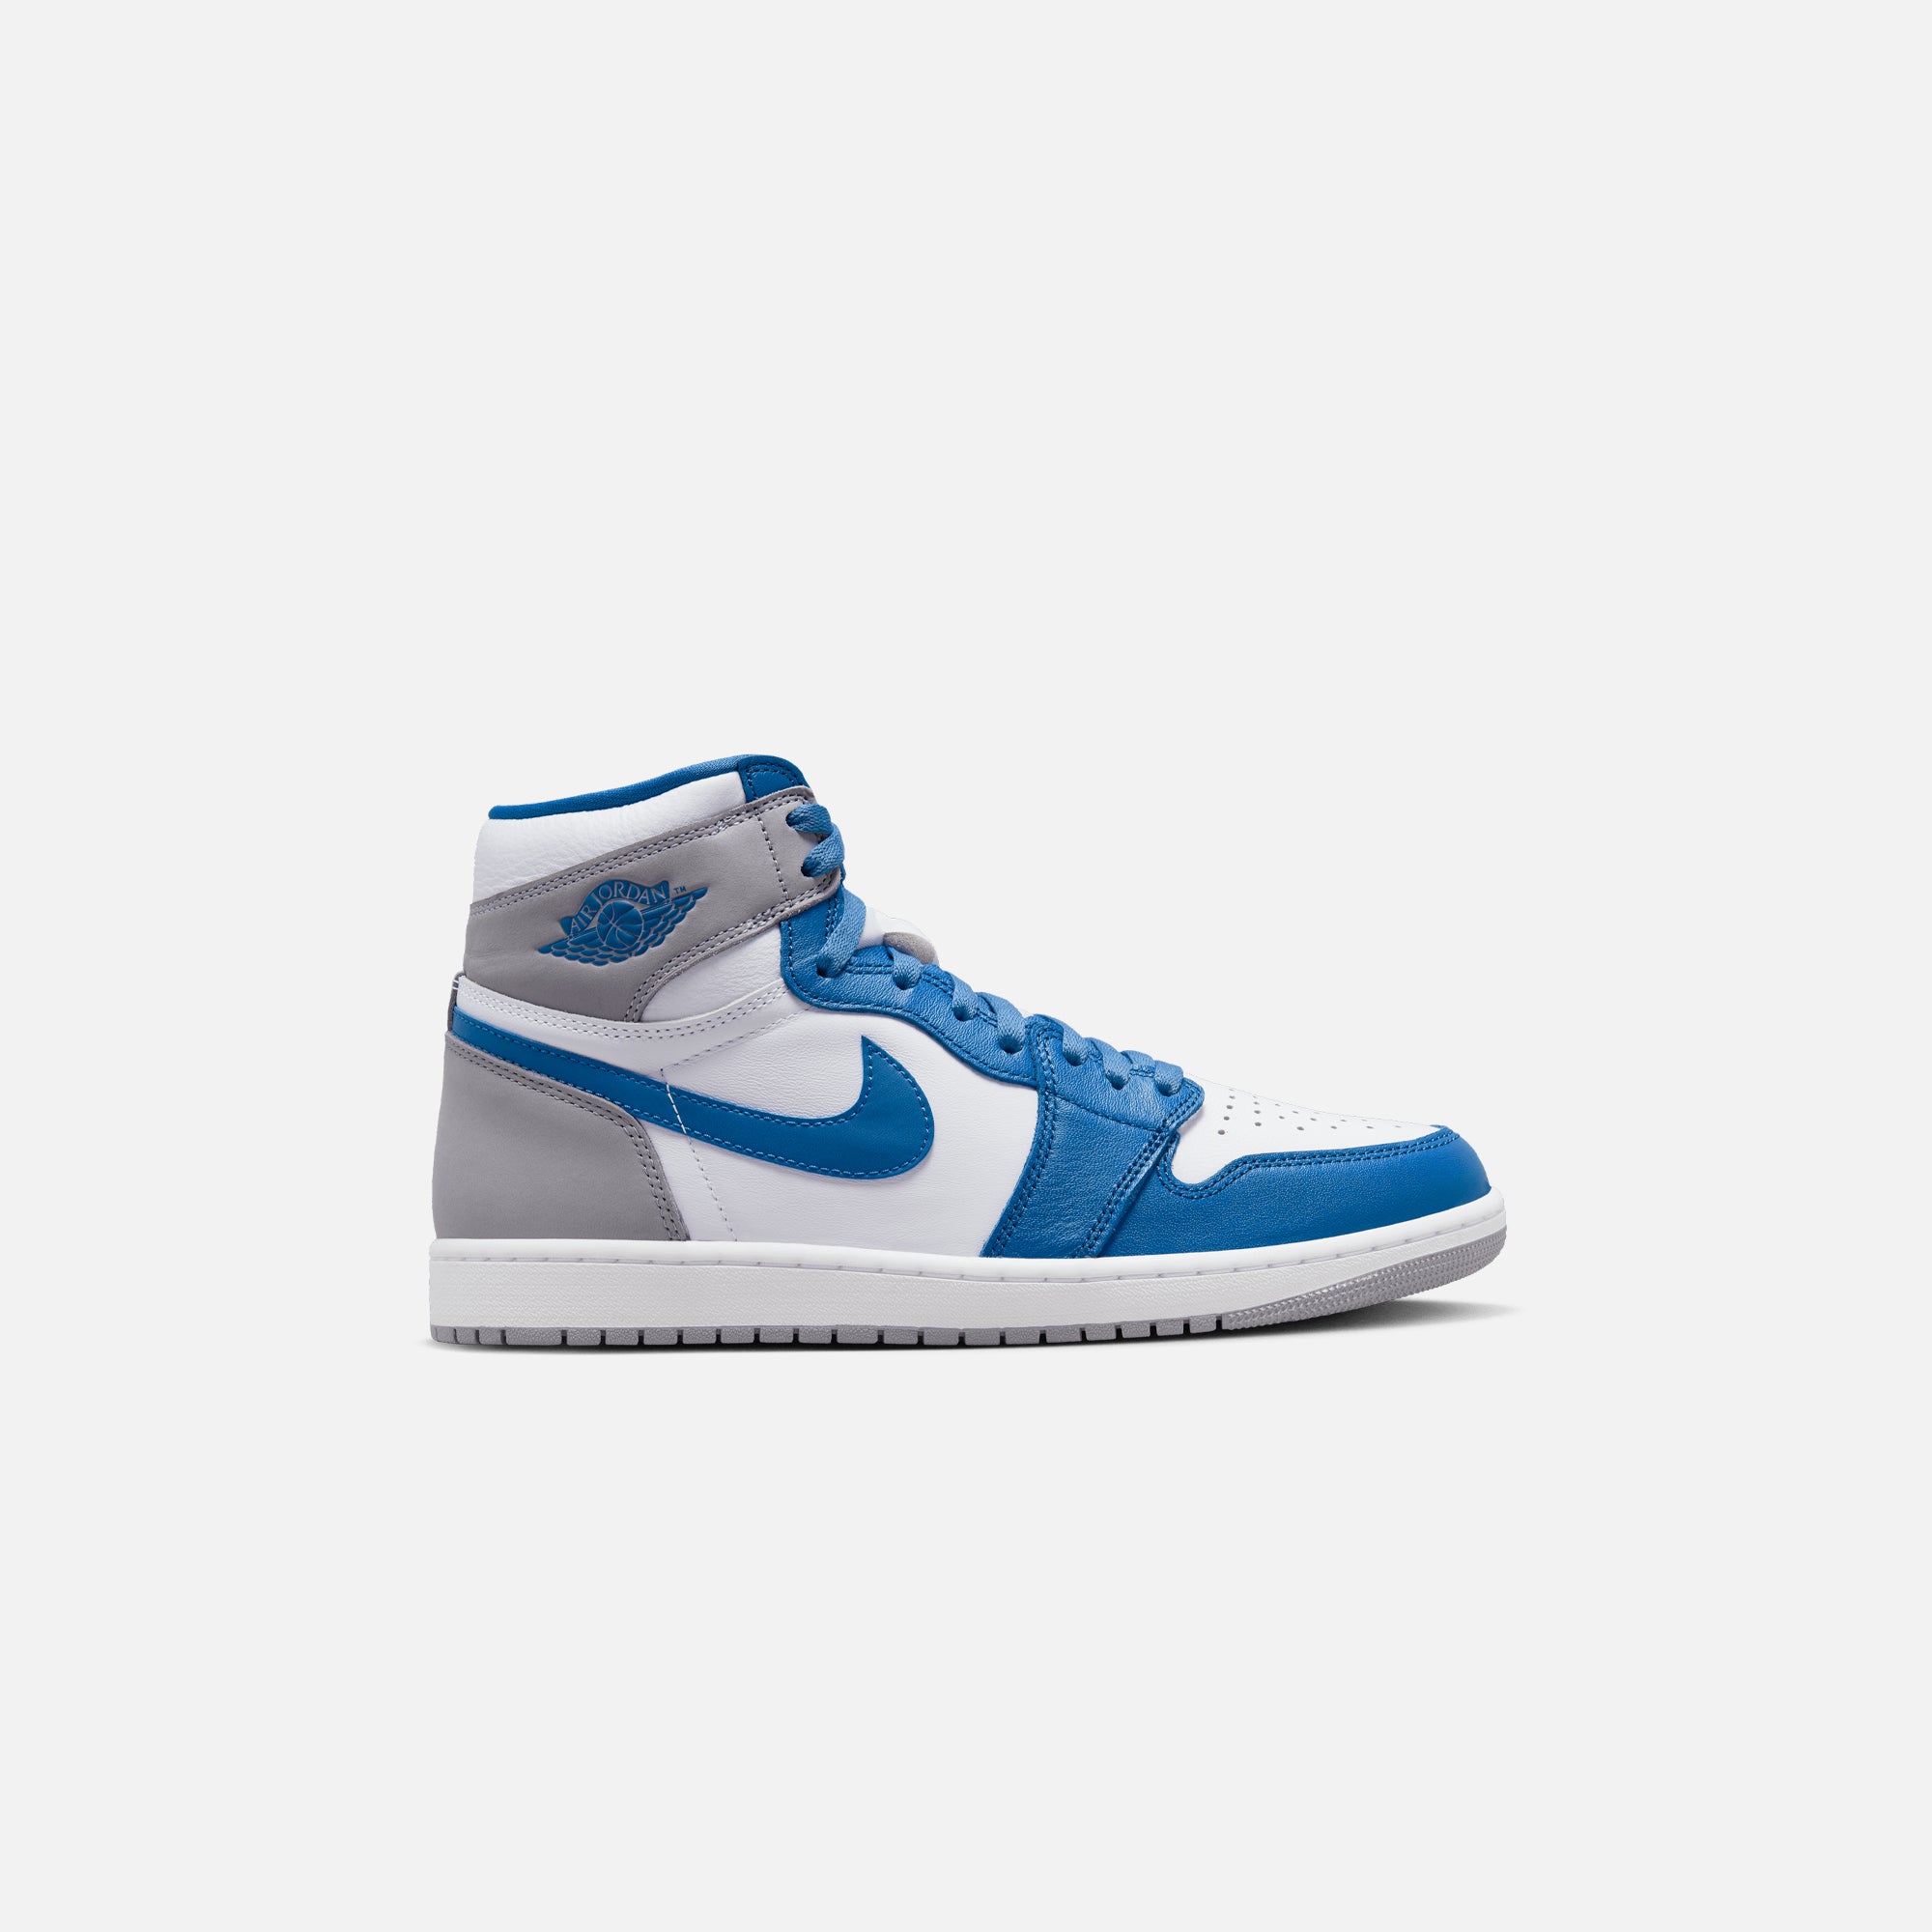 Nike Jordan 1 Retro High OG - True Blue / White / Cement Grey – Kith Europe